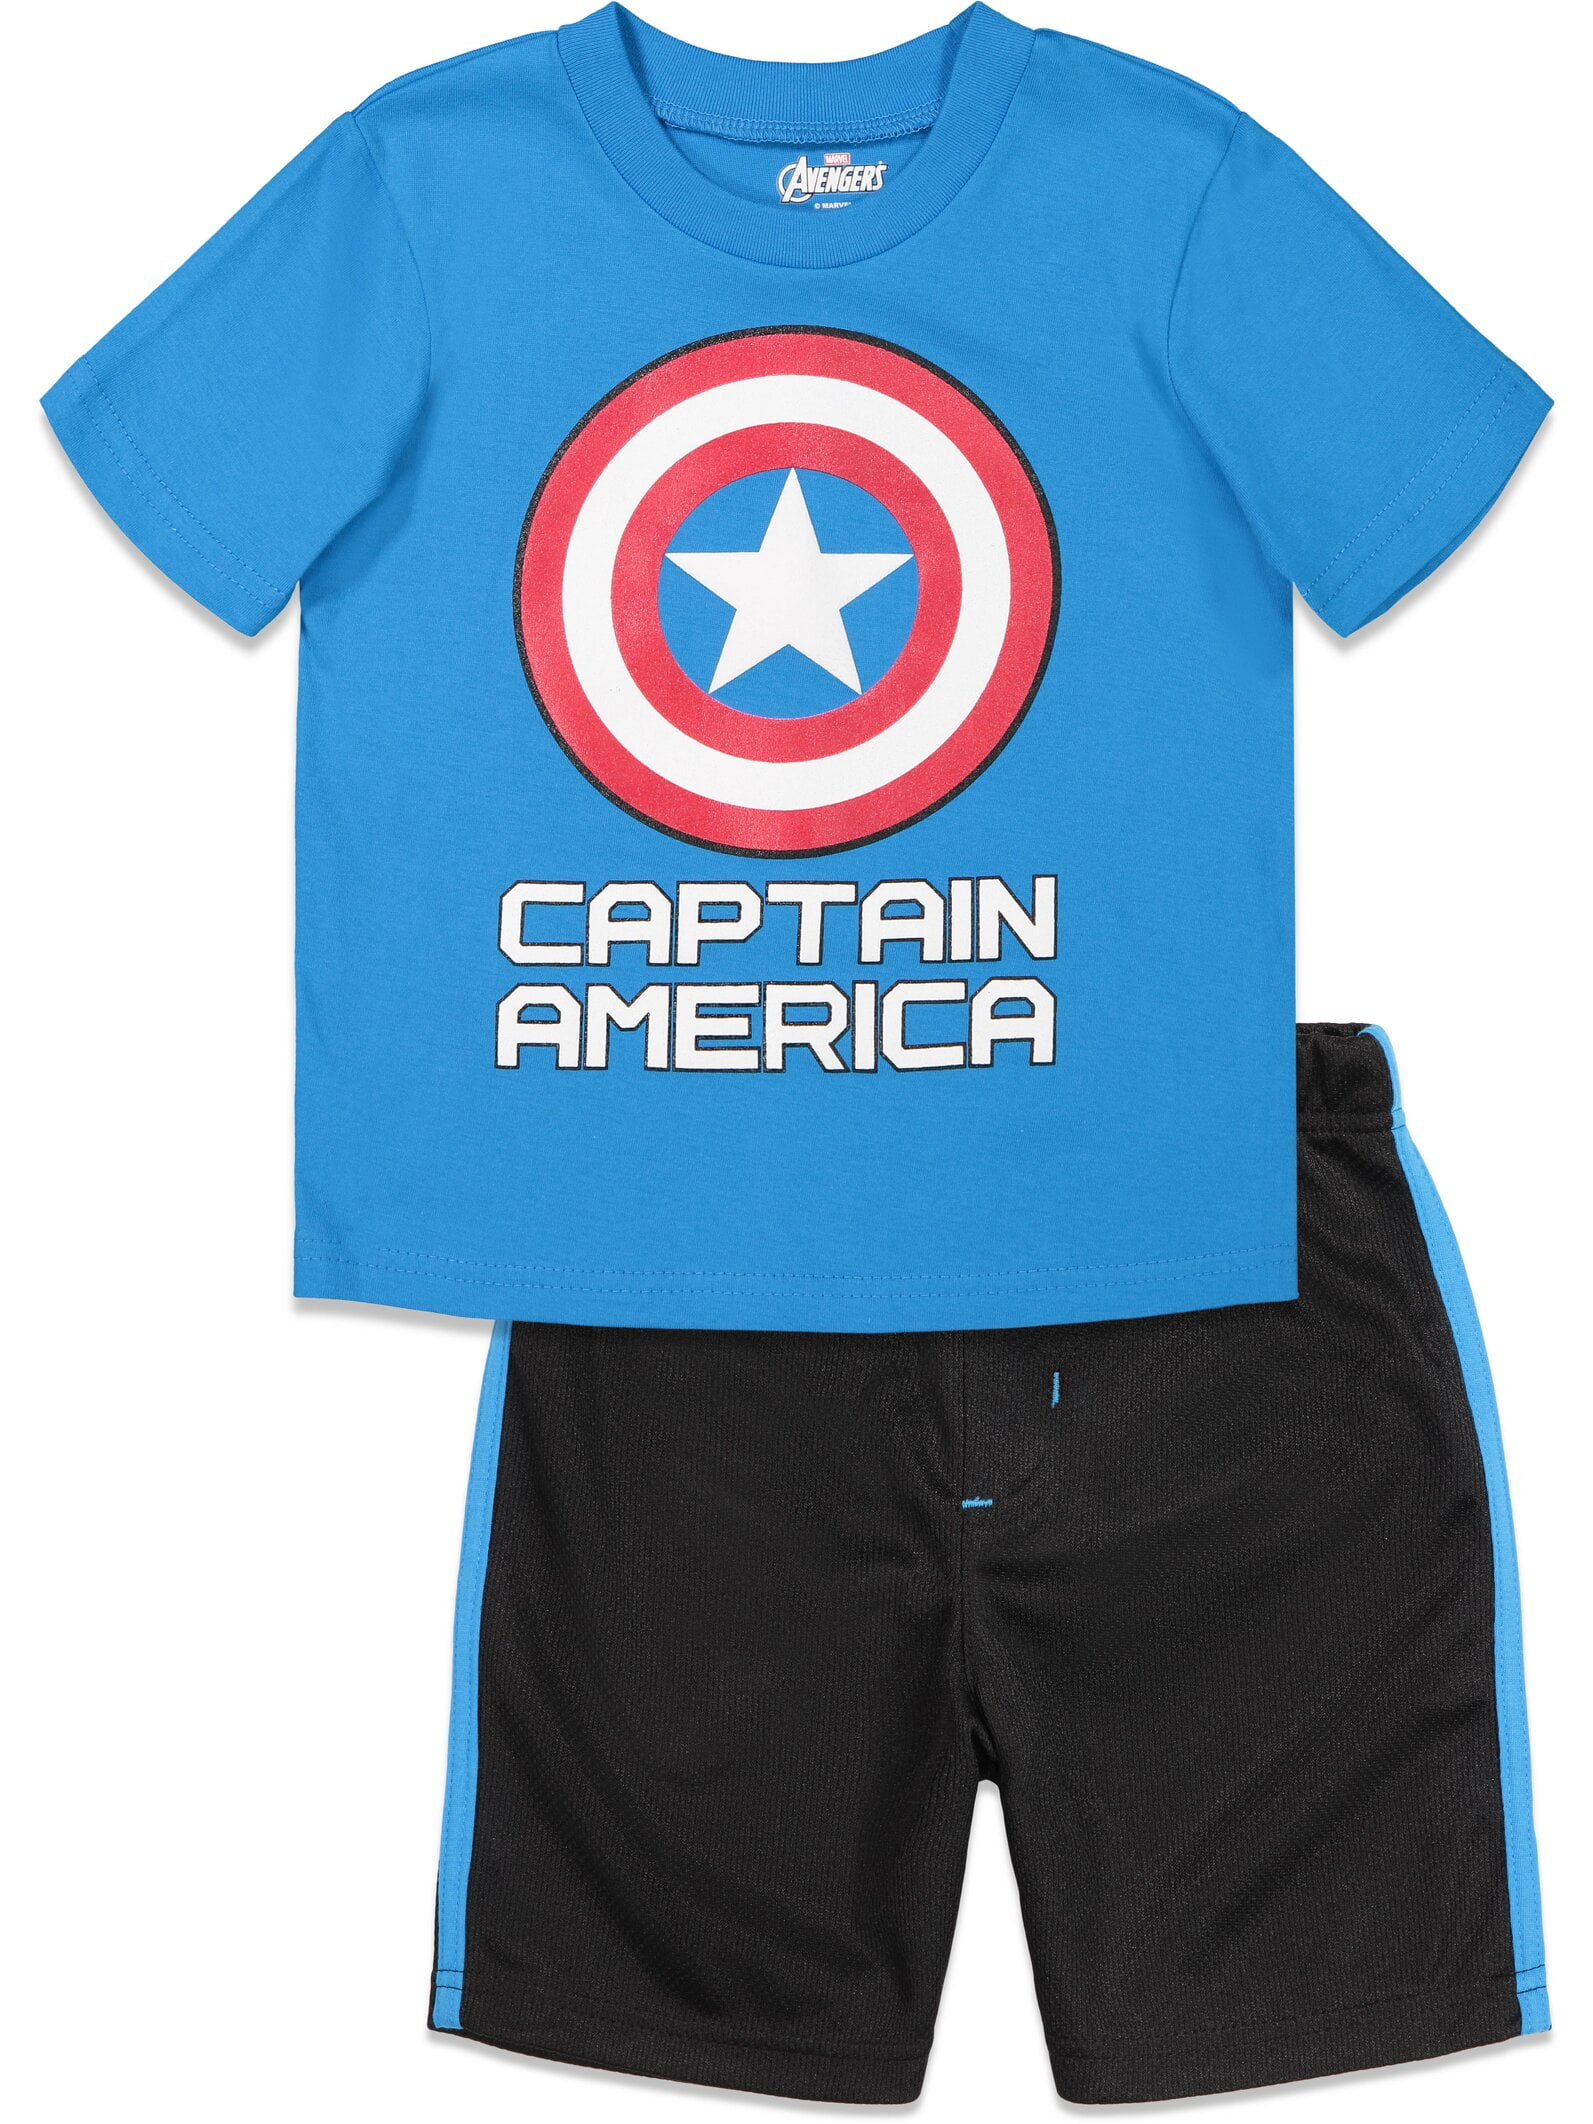 Boys Kids Sun Suit T Shirt Shorts Set 2 Pc Captain America Size 4 5 6 7 8 9 10 